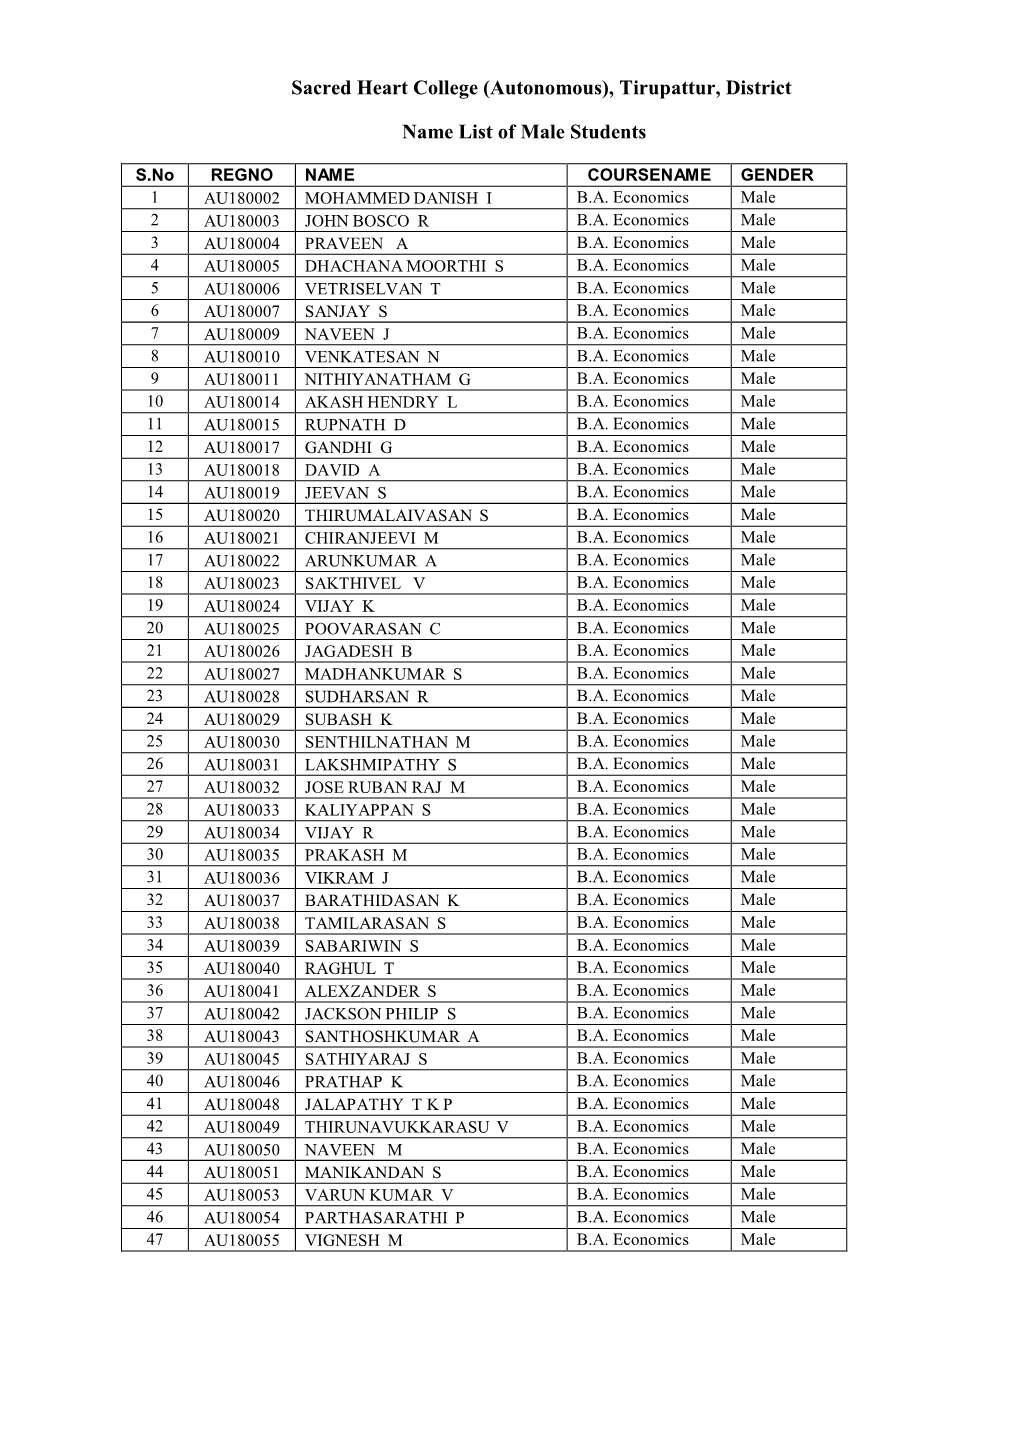 Sacred Heart College (Autonomous), Tirupattur, District Name List Of